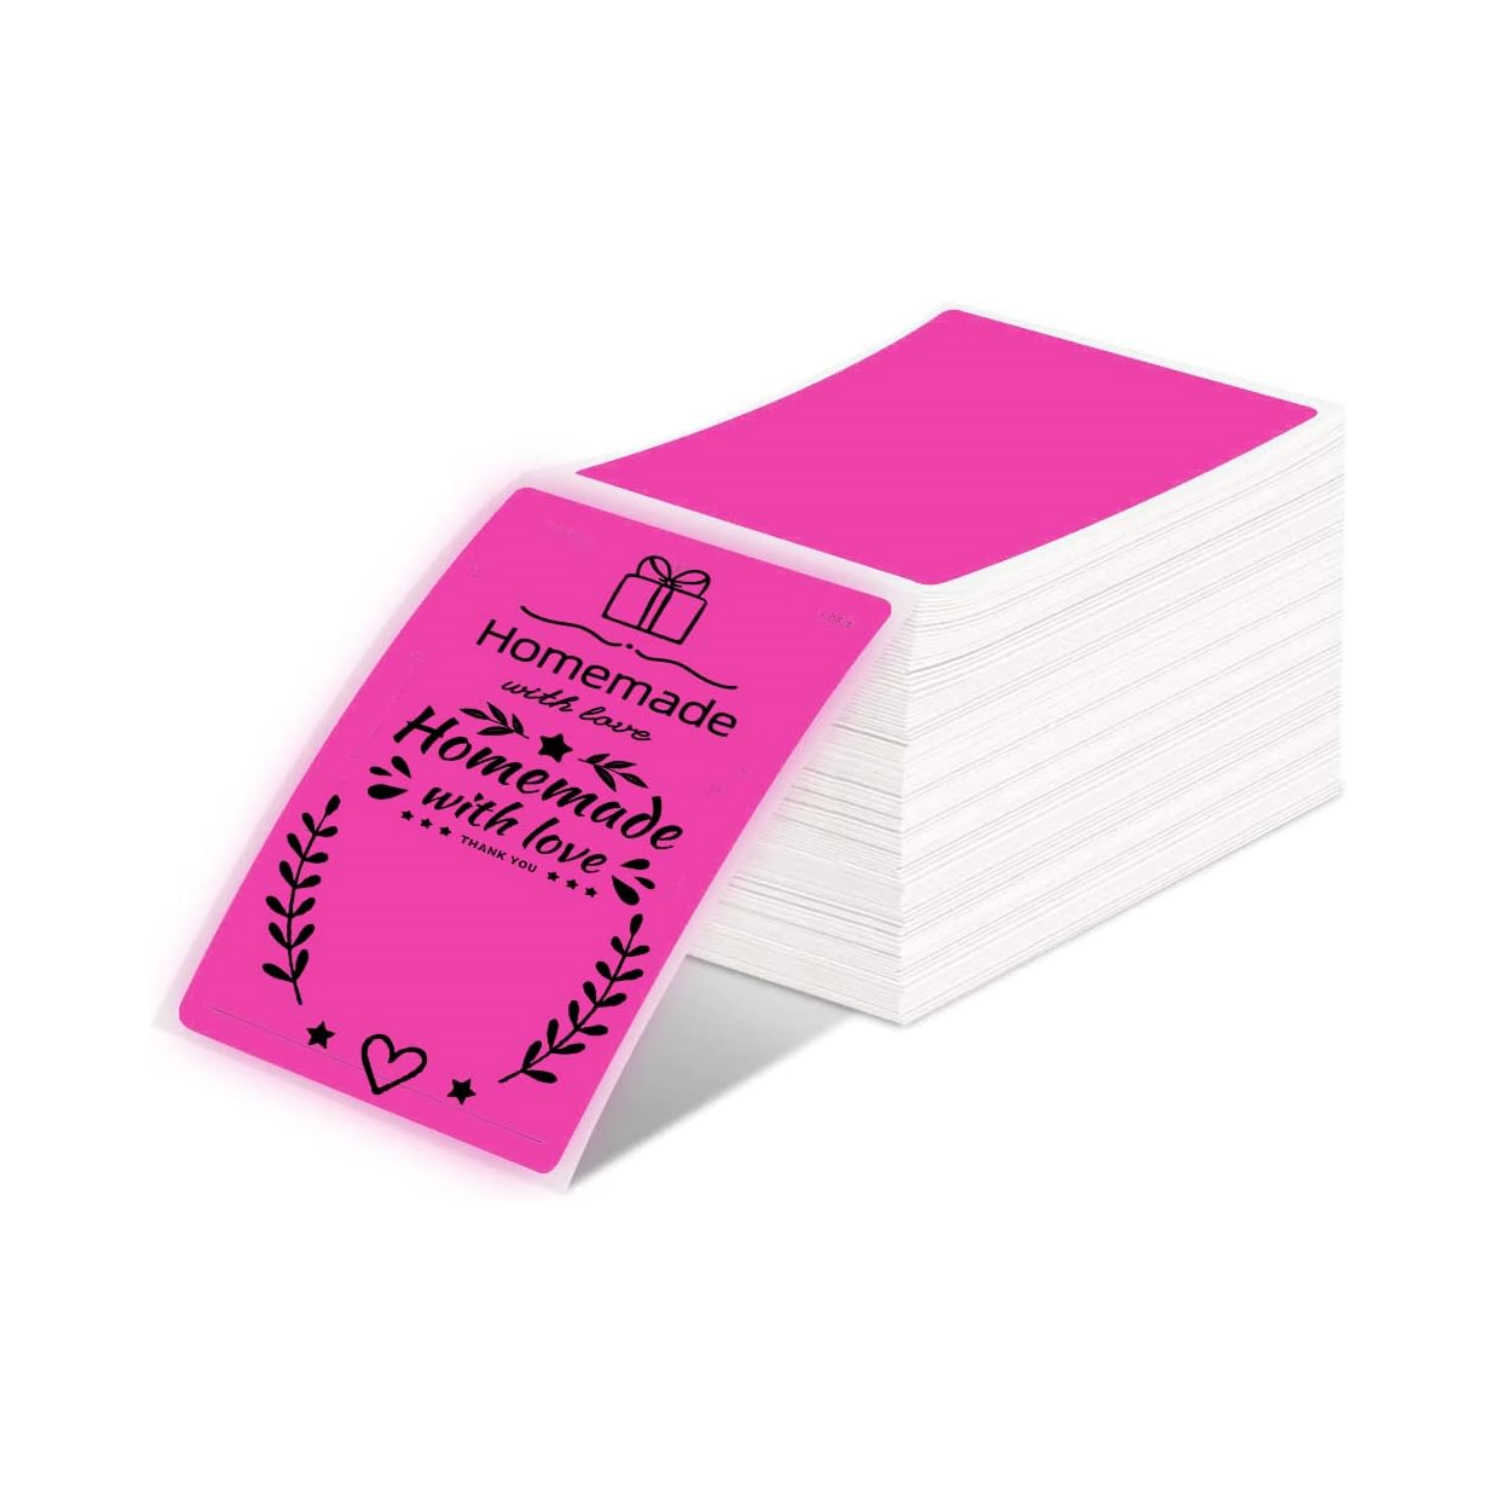 Étiquette d'expédition thermique directe 4x6 Fanfold (500 étiquettes) | Rose rouge